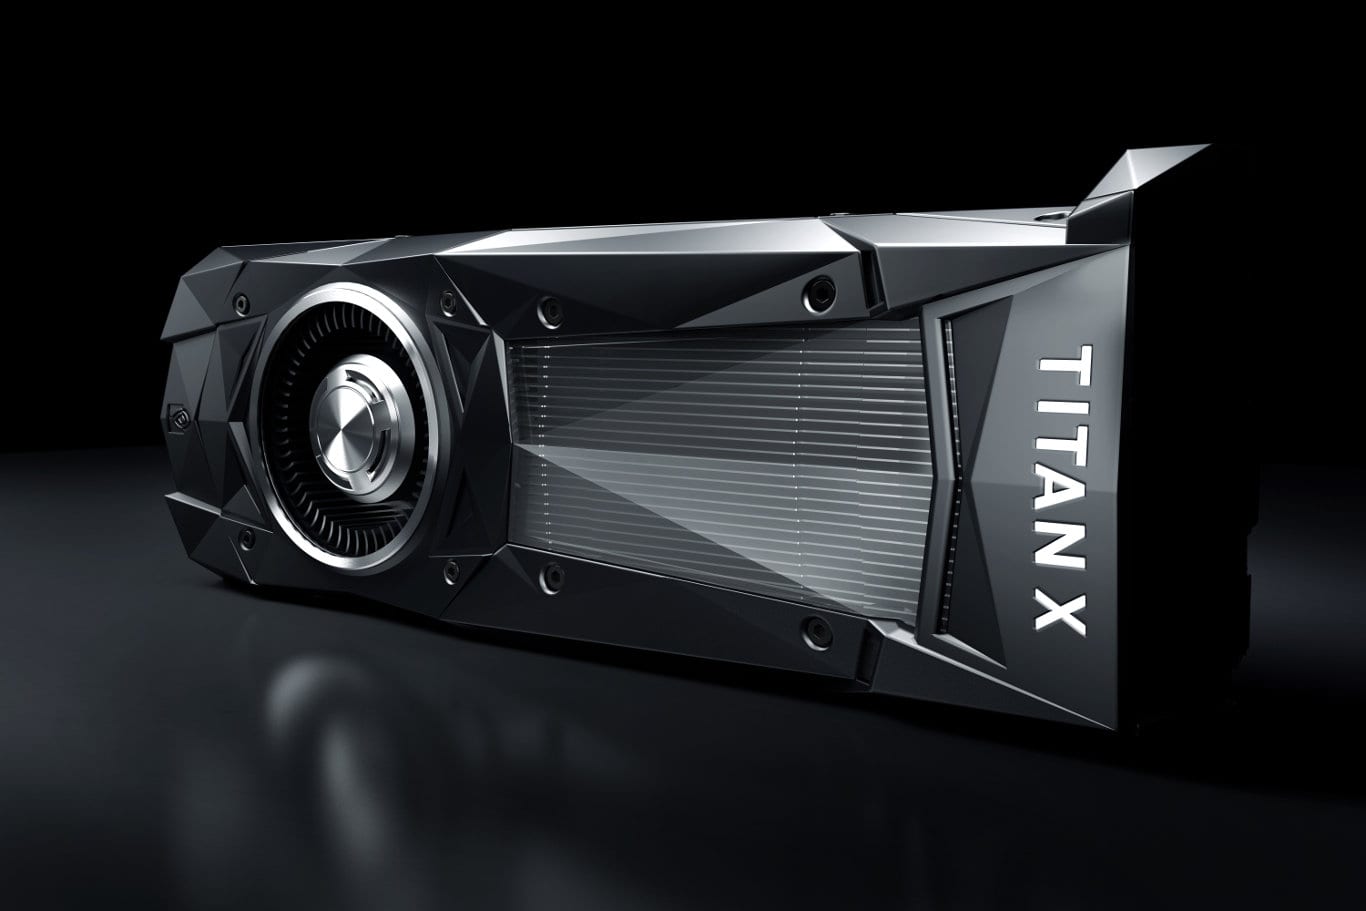 NVidia TITAN X video card (GPU)